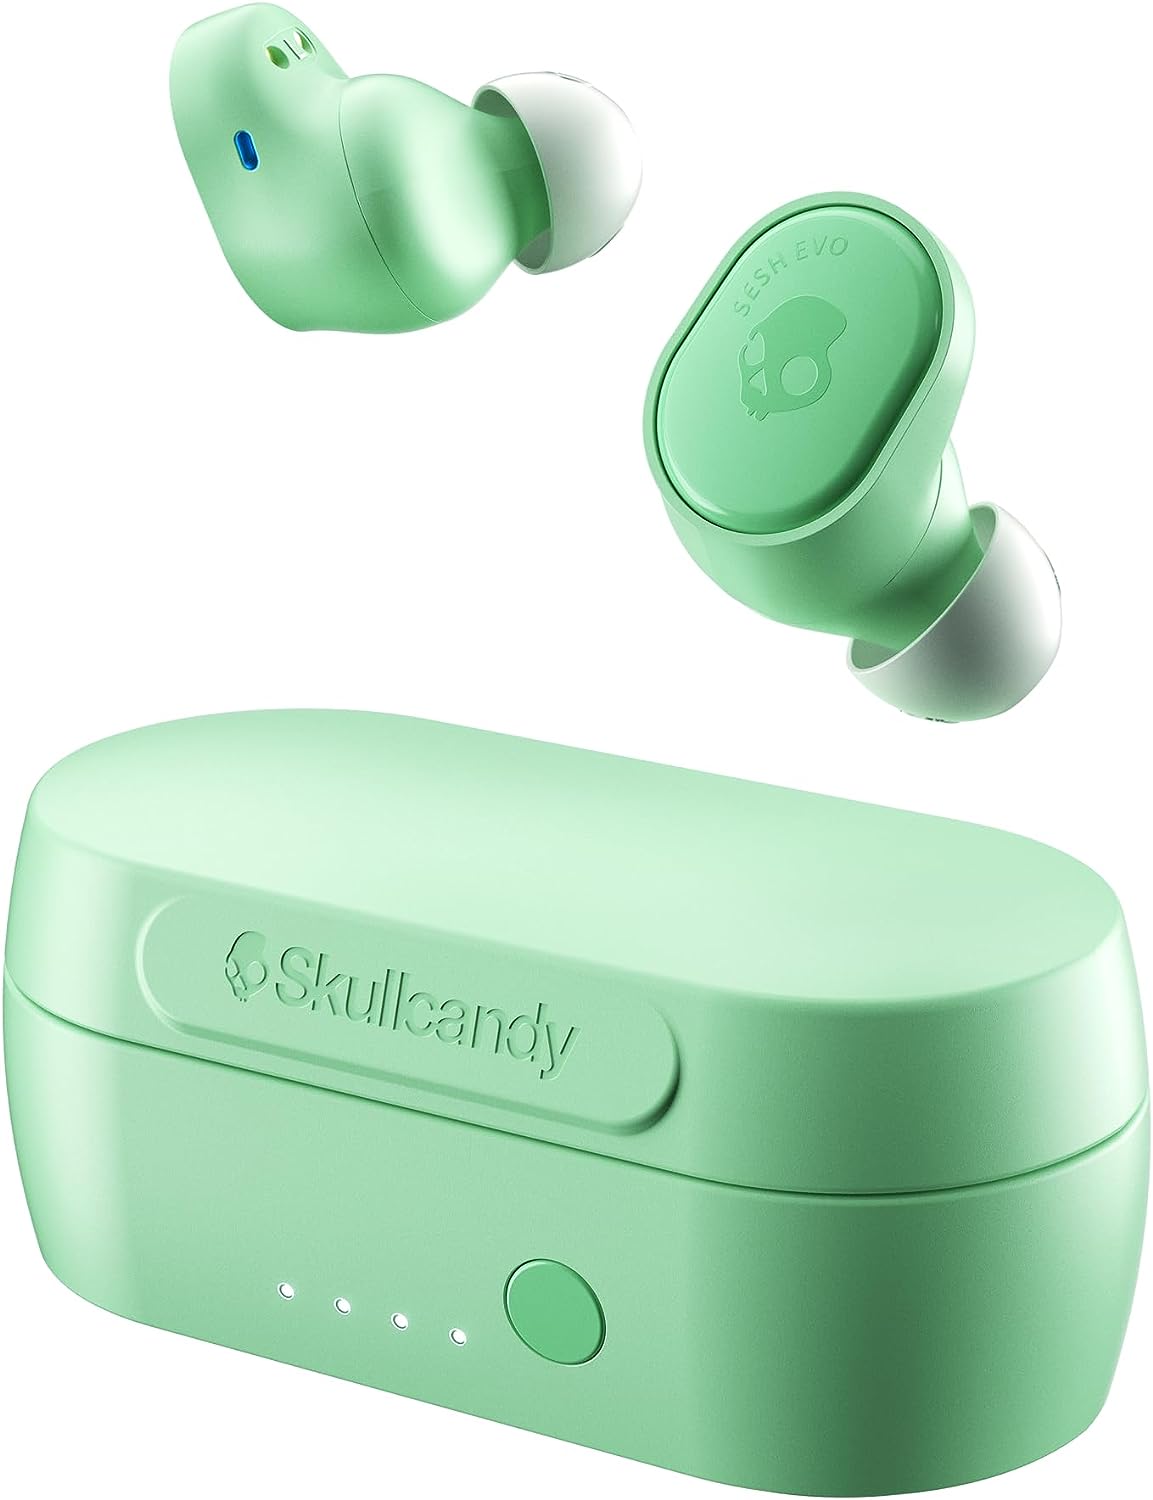 Review of Skullcandy Sesh Evo In-Ear Wireless Earbuds - Mint